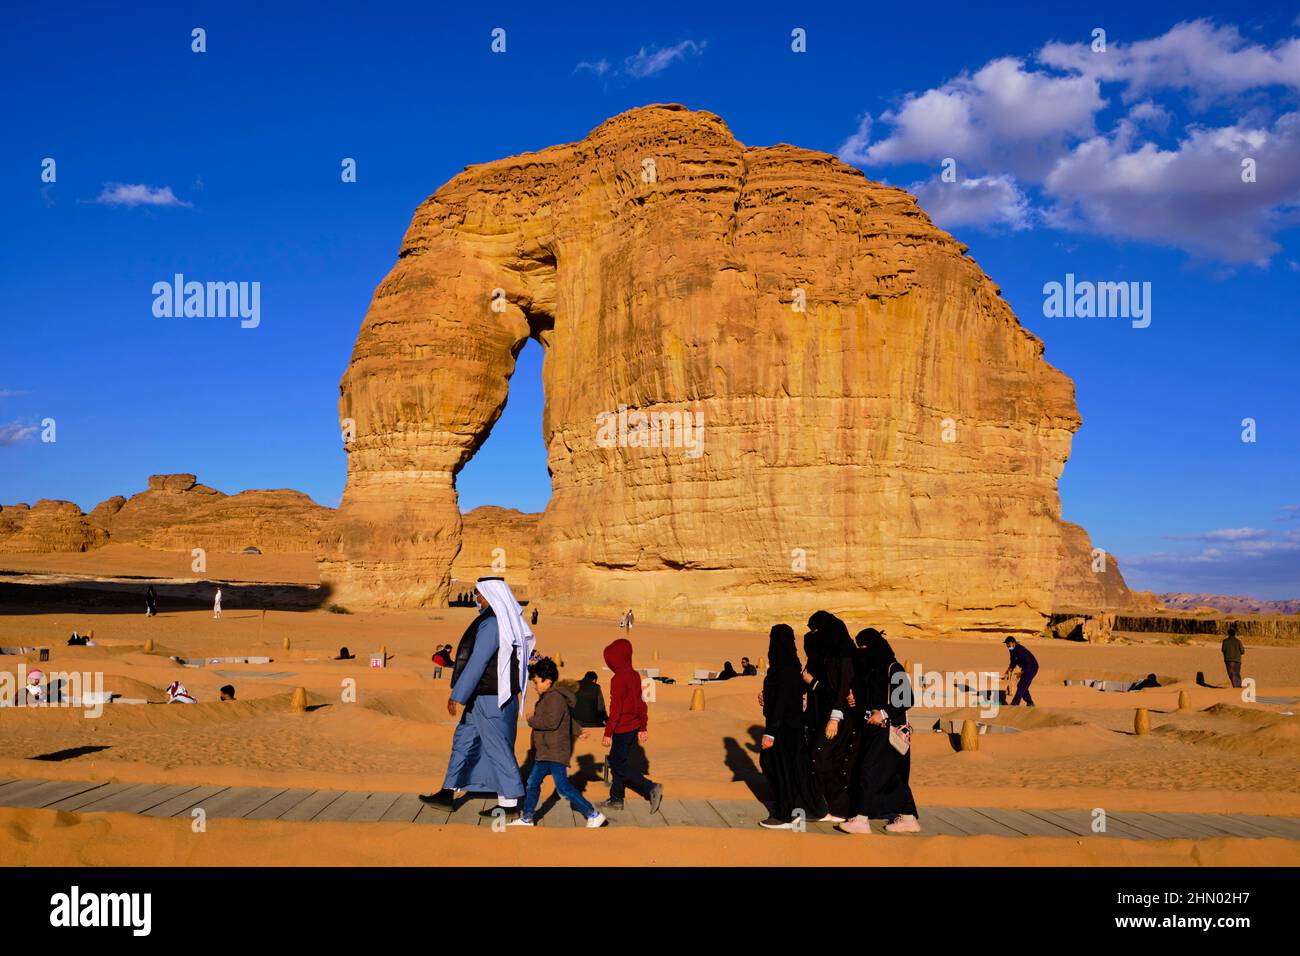 Saudi Arabia, Al Madinah Region, AlUla or Al Ula, Elephant rock, touristical site Stock Photo